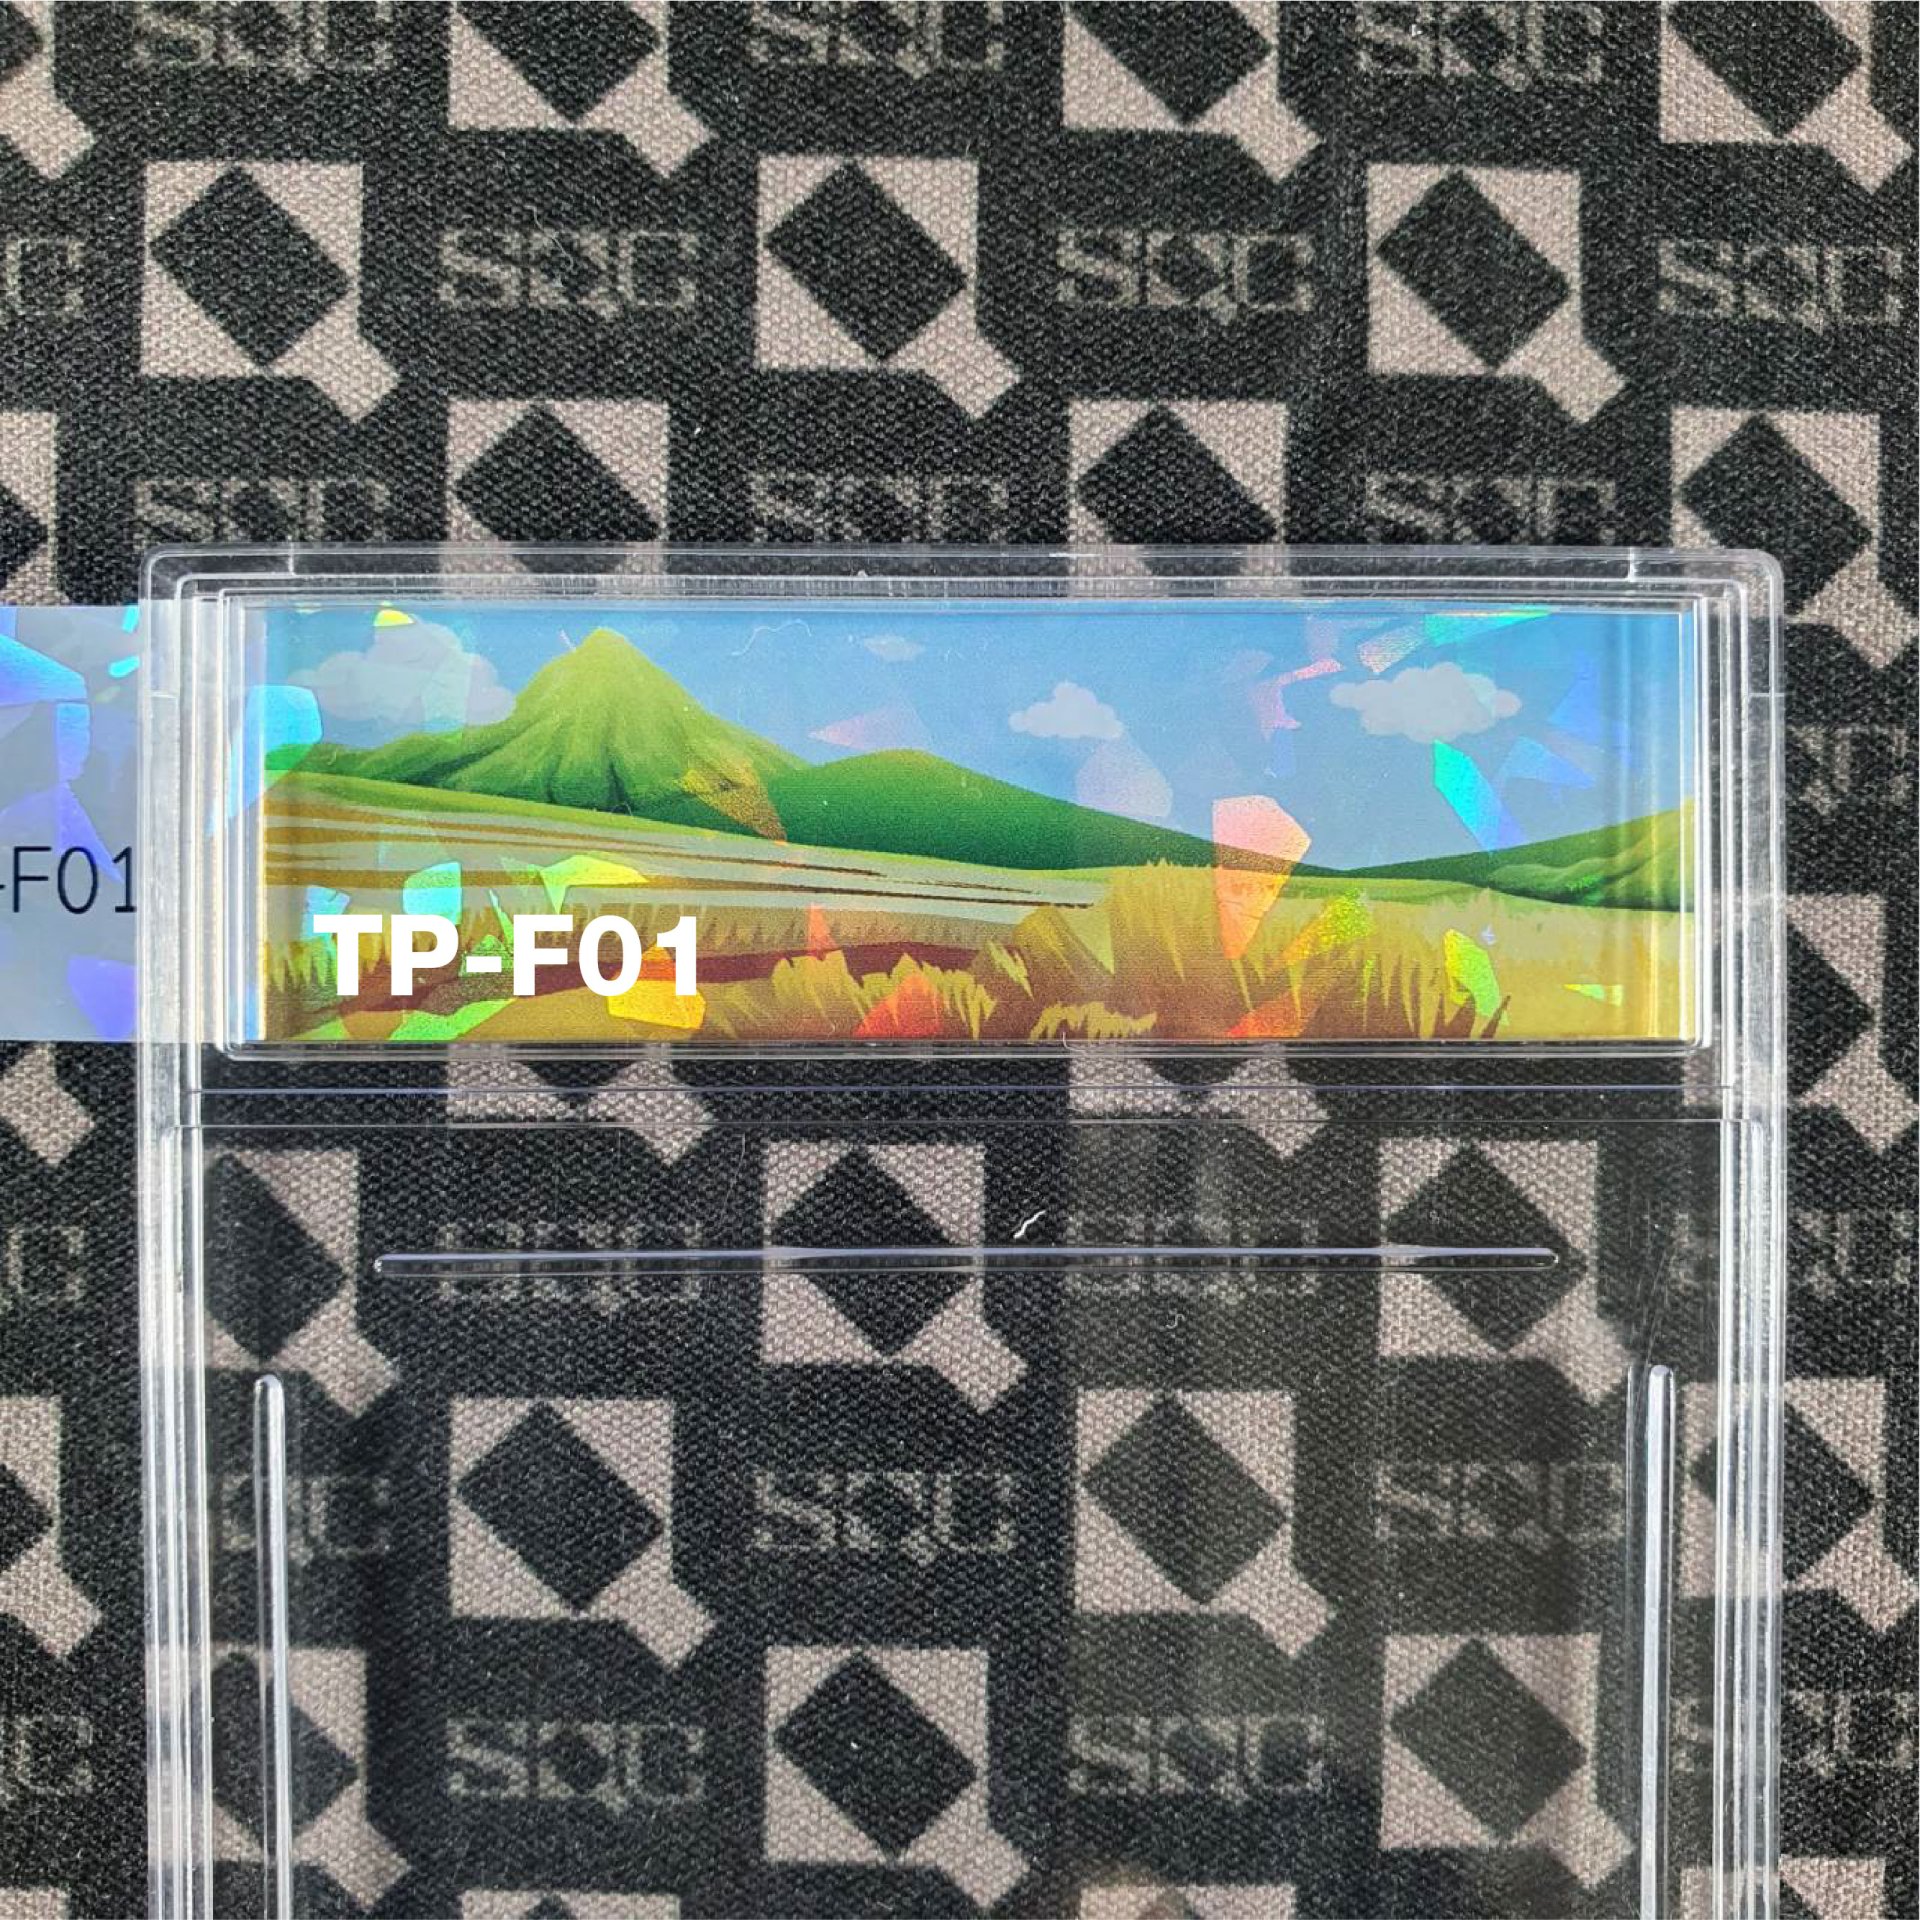 TP-F01